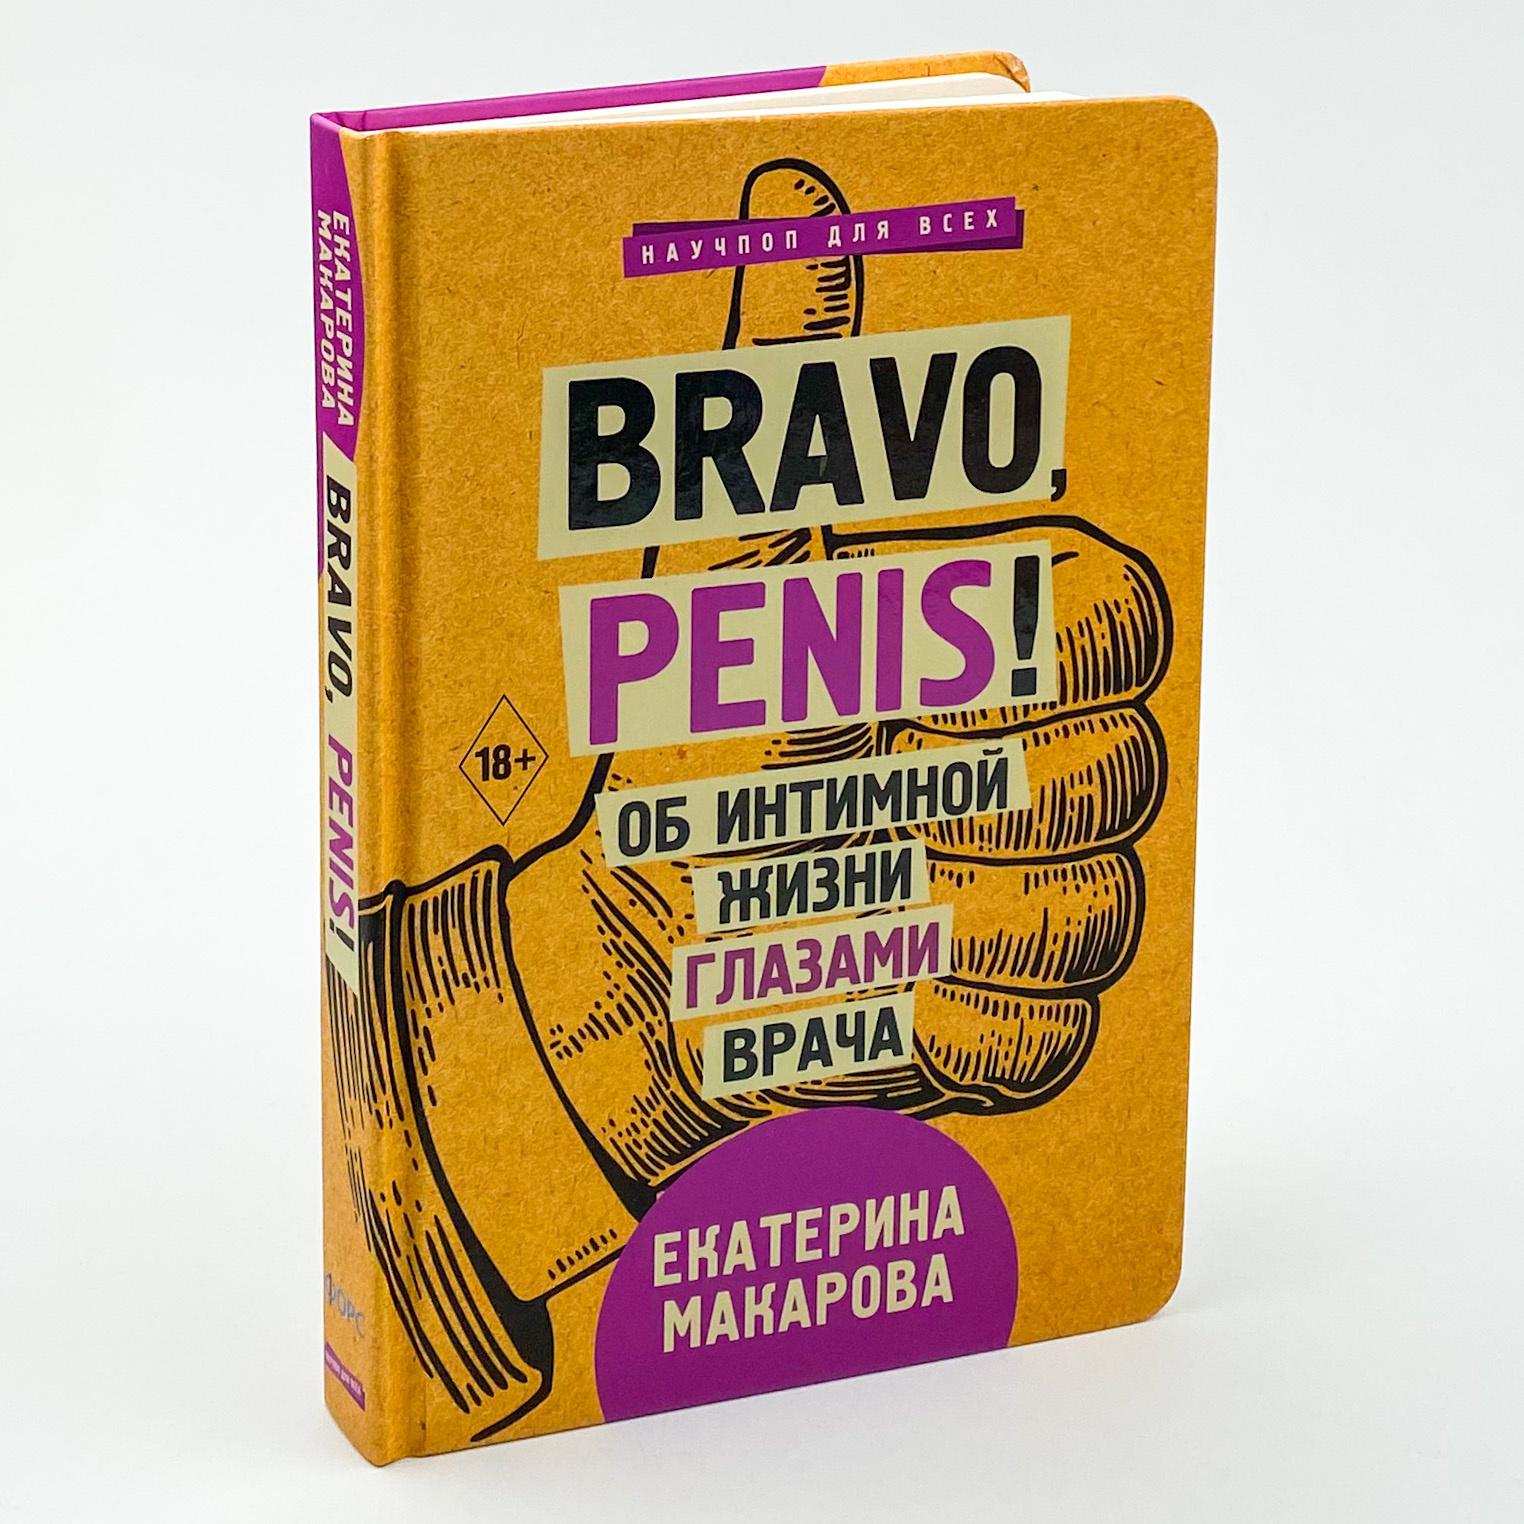 Bravo, Penis! Об интимной жизни глазами врача. Автор — Катерина Макарова. 